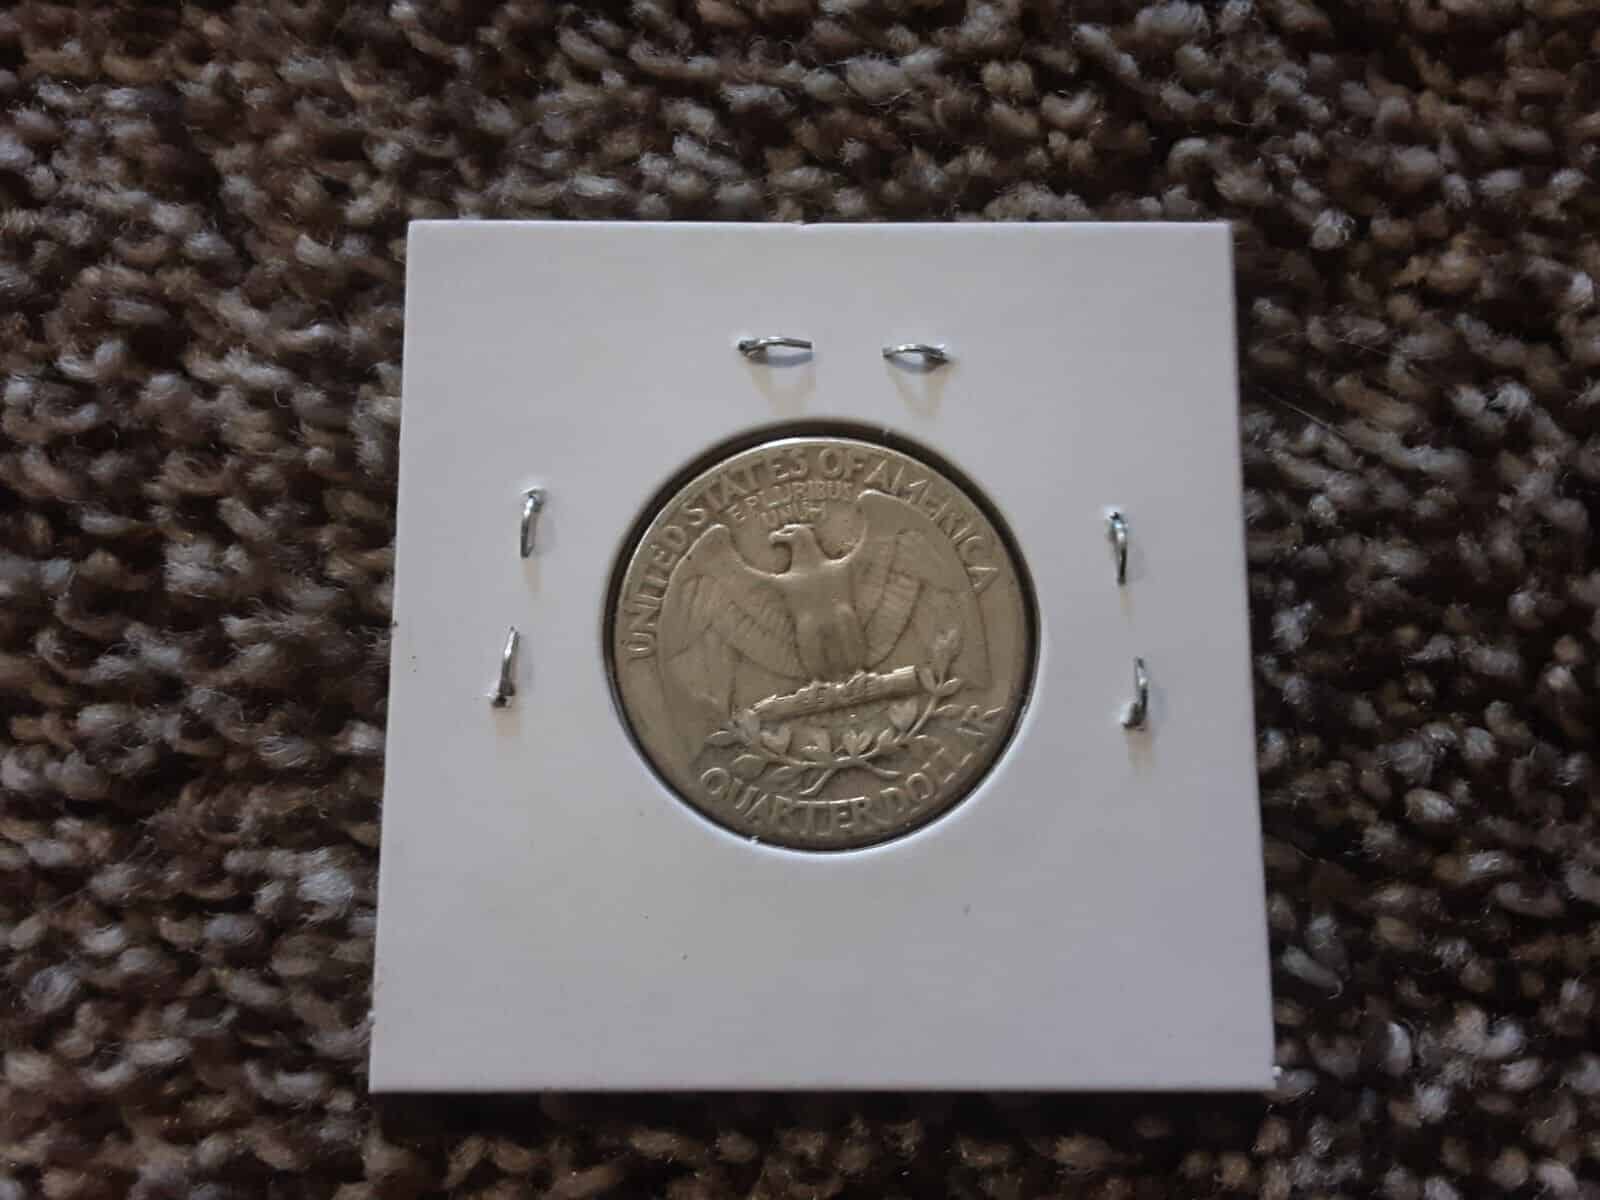 1954 Quarter No Mint Mark